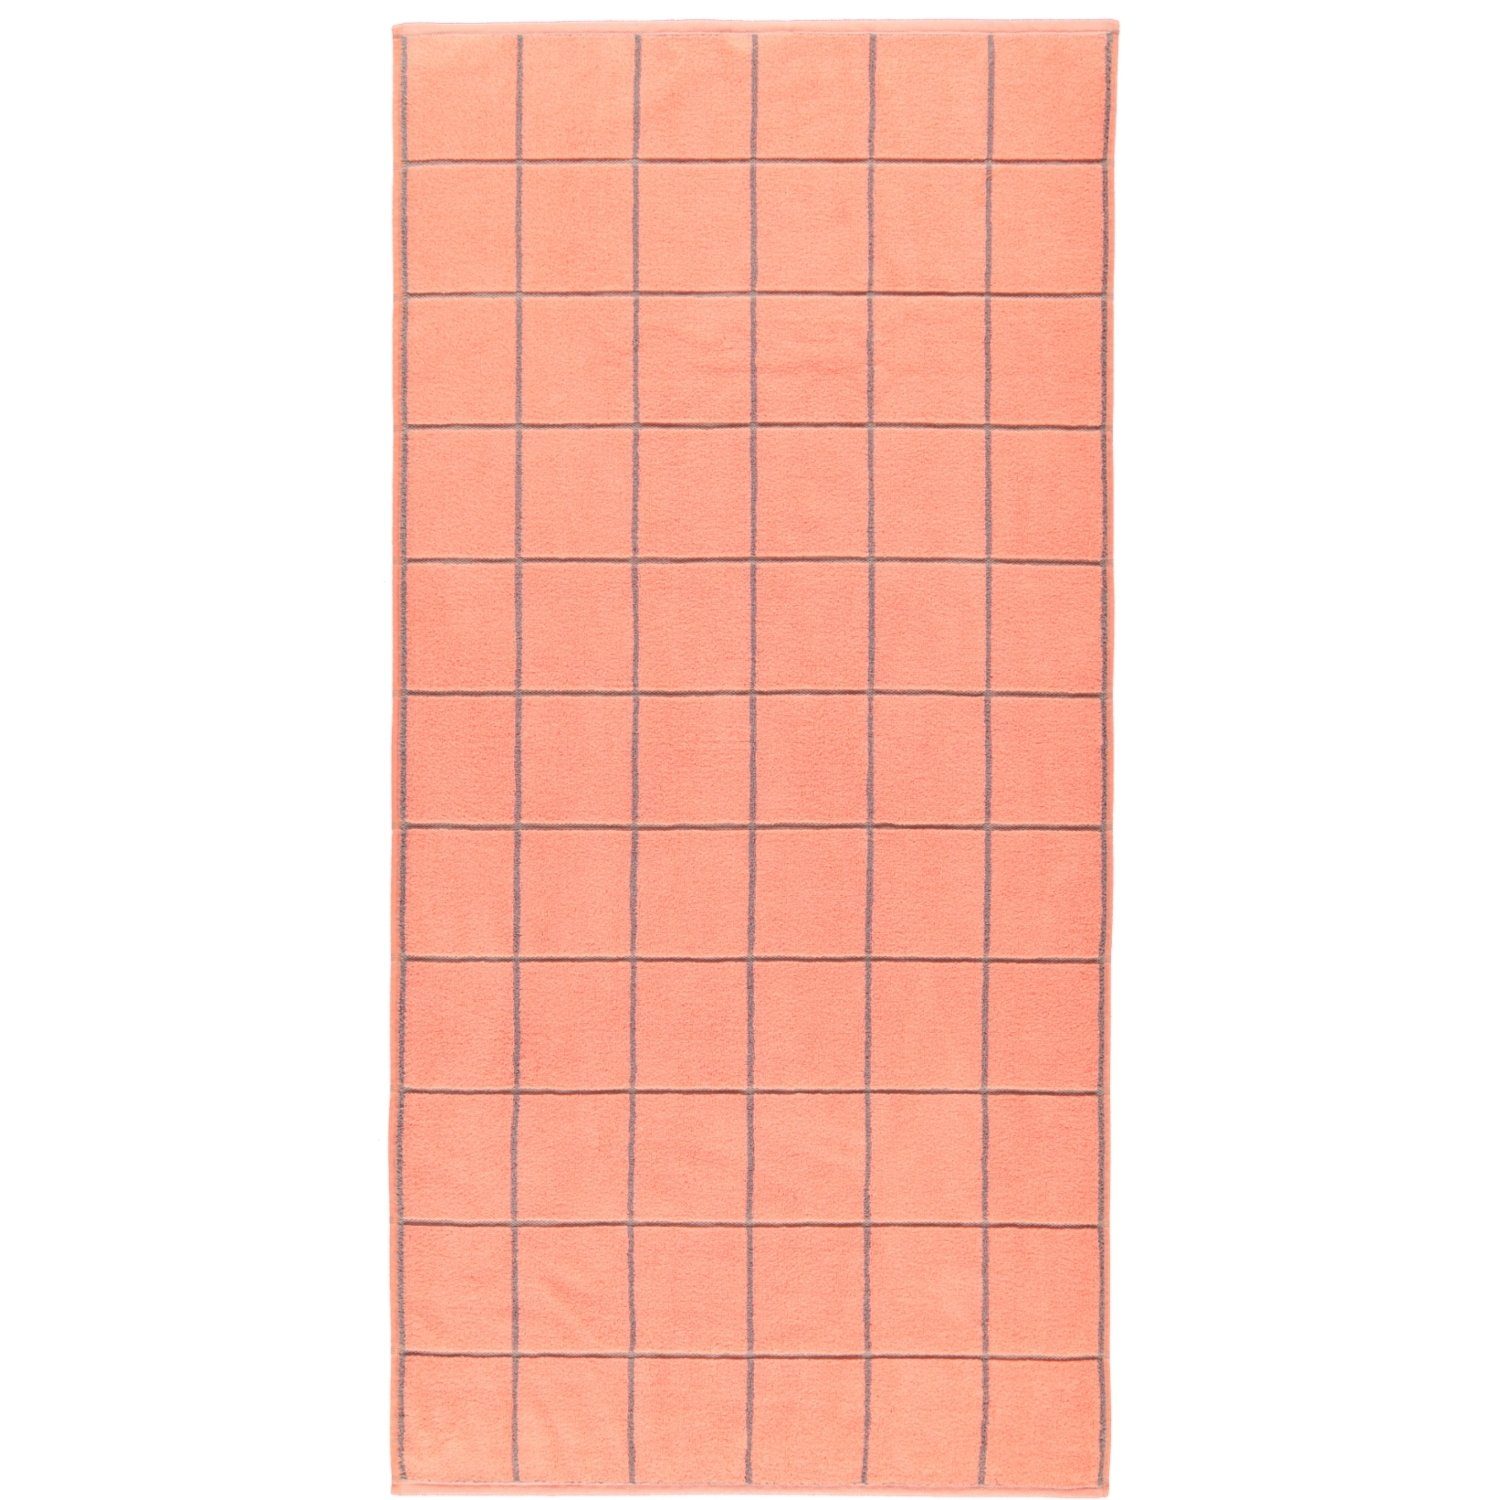 ROSS Handtücher Überkaro 9032, 100% Baumwolle peach pink | Badetücher